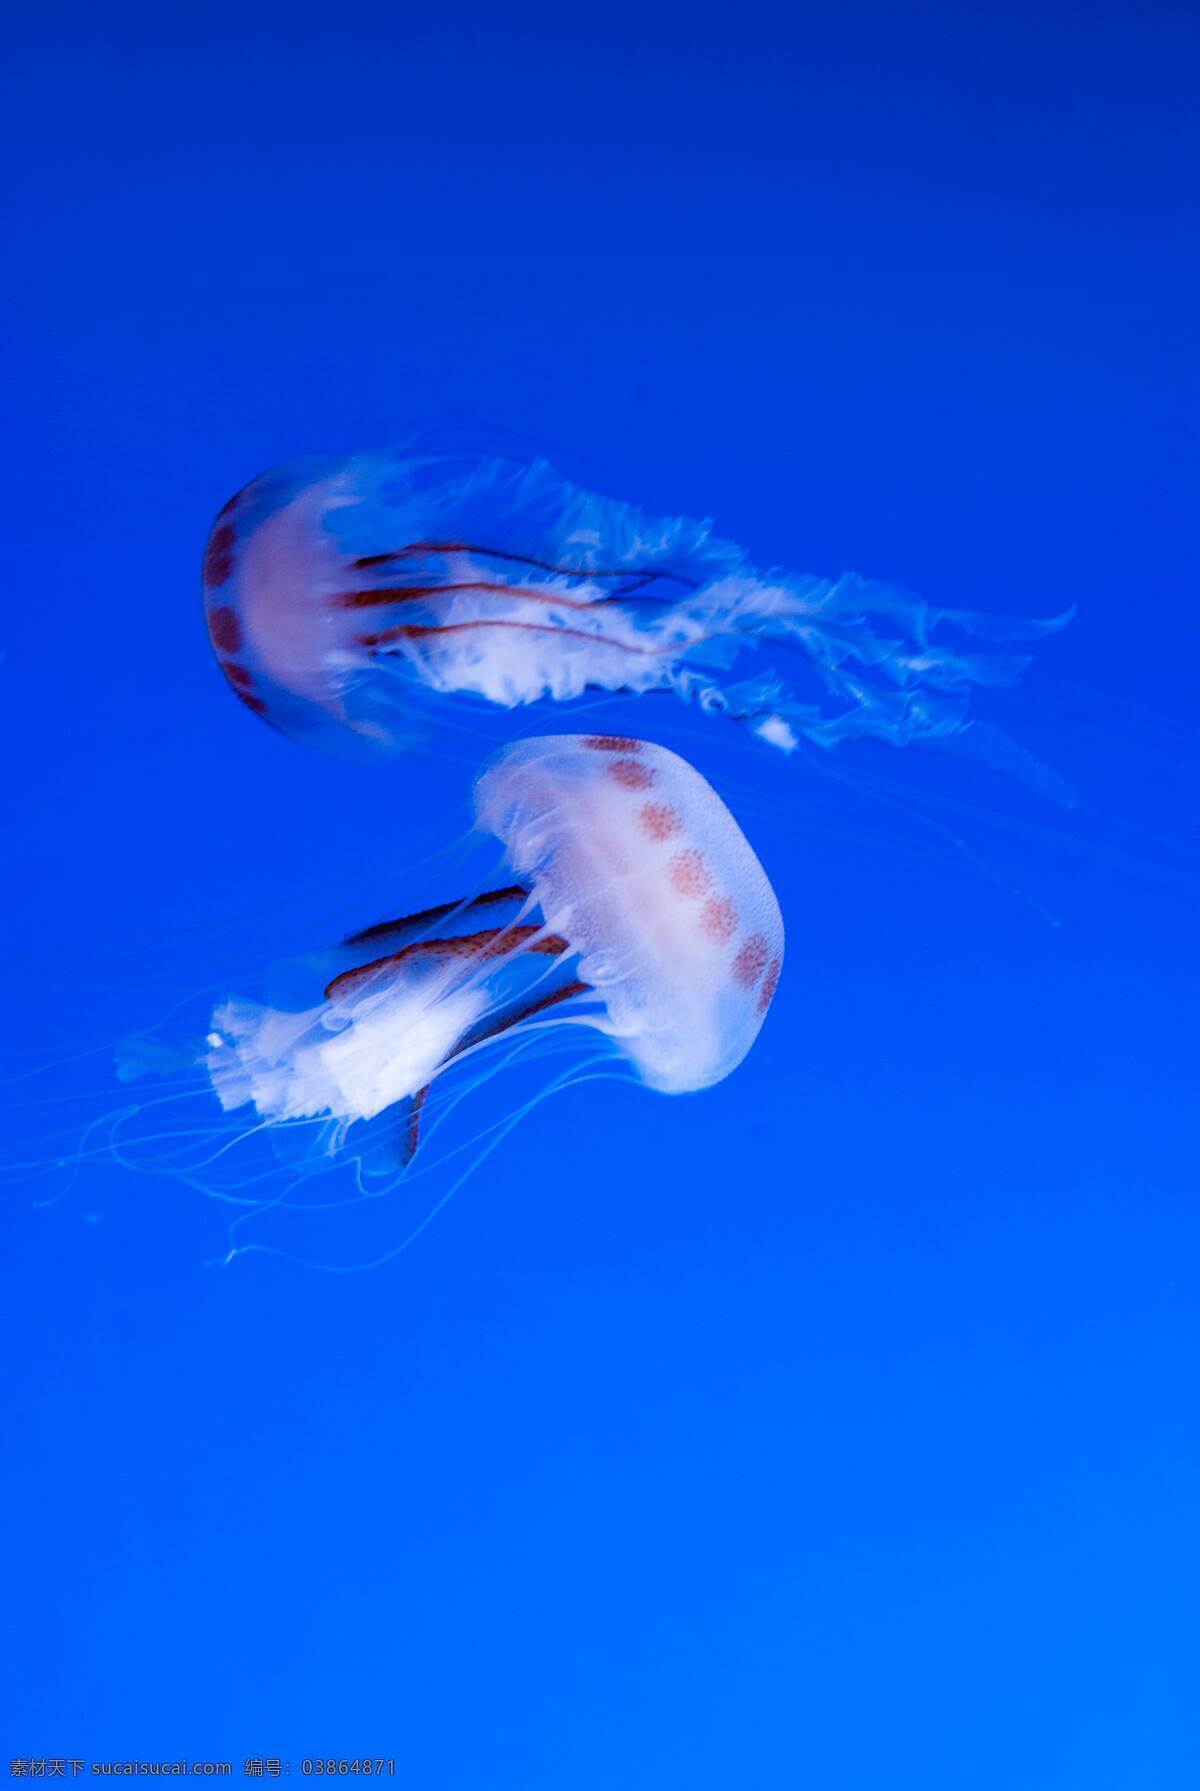 水母 软体 浮游 触须 彩色 水族 斑斓 海洋 动物 生物世界 海洋生物